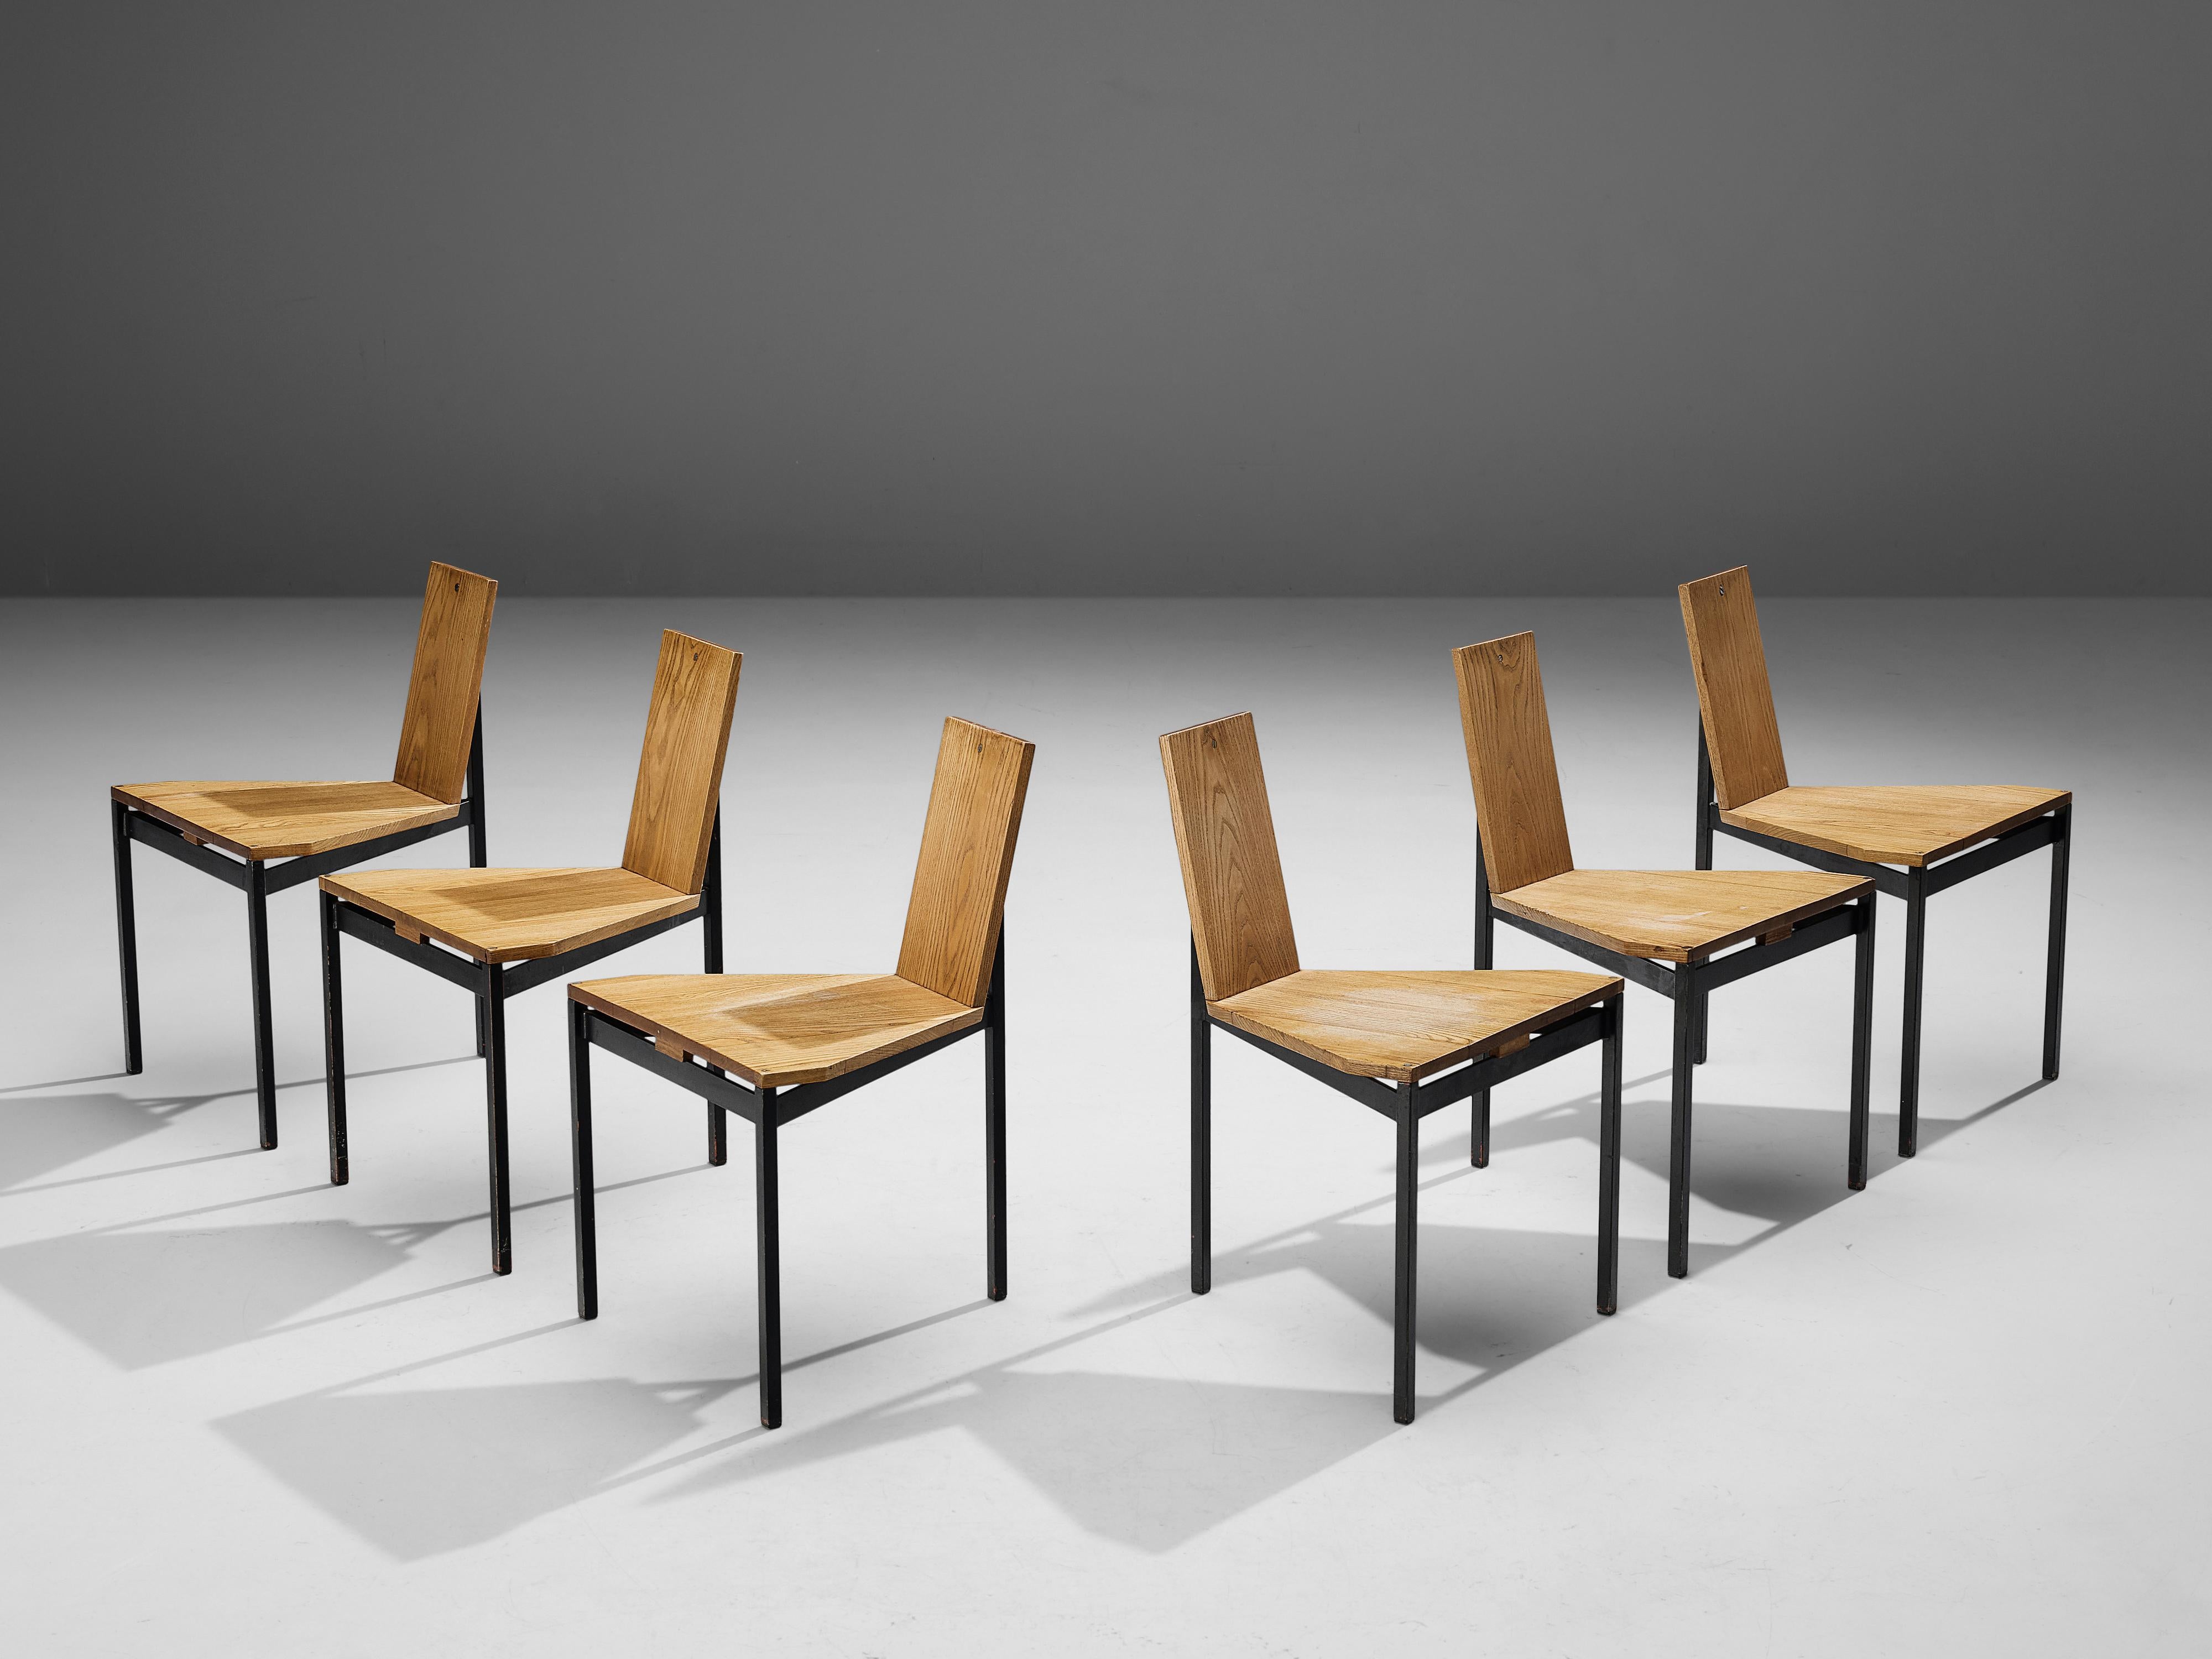 Wim den Boon, ensemble de six chaises de salle à manger, frêne, métal laqué, Pays-Bas, 1955. 

Ensemble exclusif de six chaises de salle à manger conçu par Wim den Boon pour une maison familiale néerlandaise, et donc unique en son genre. Chaque